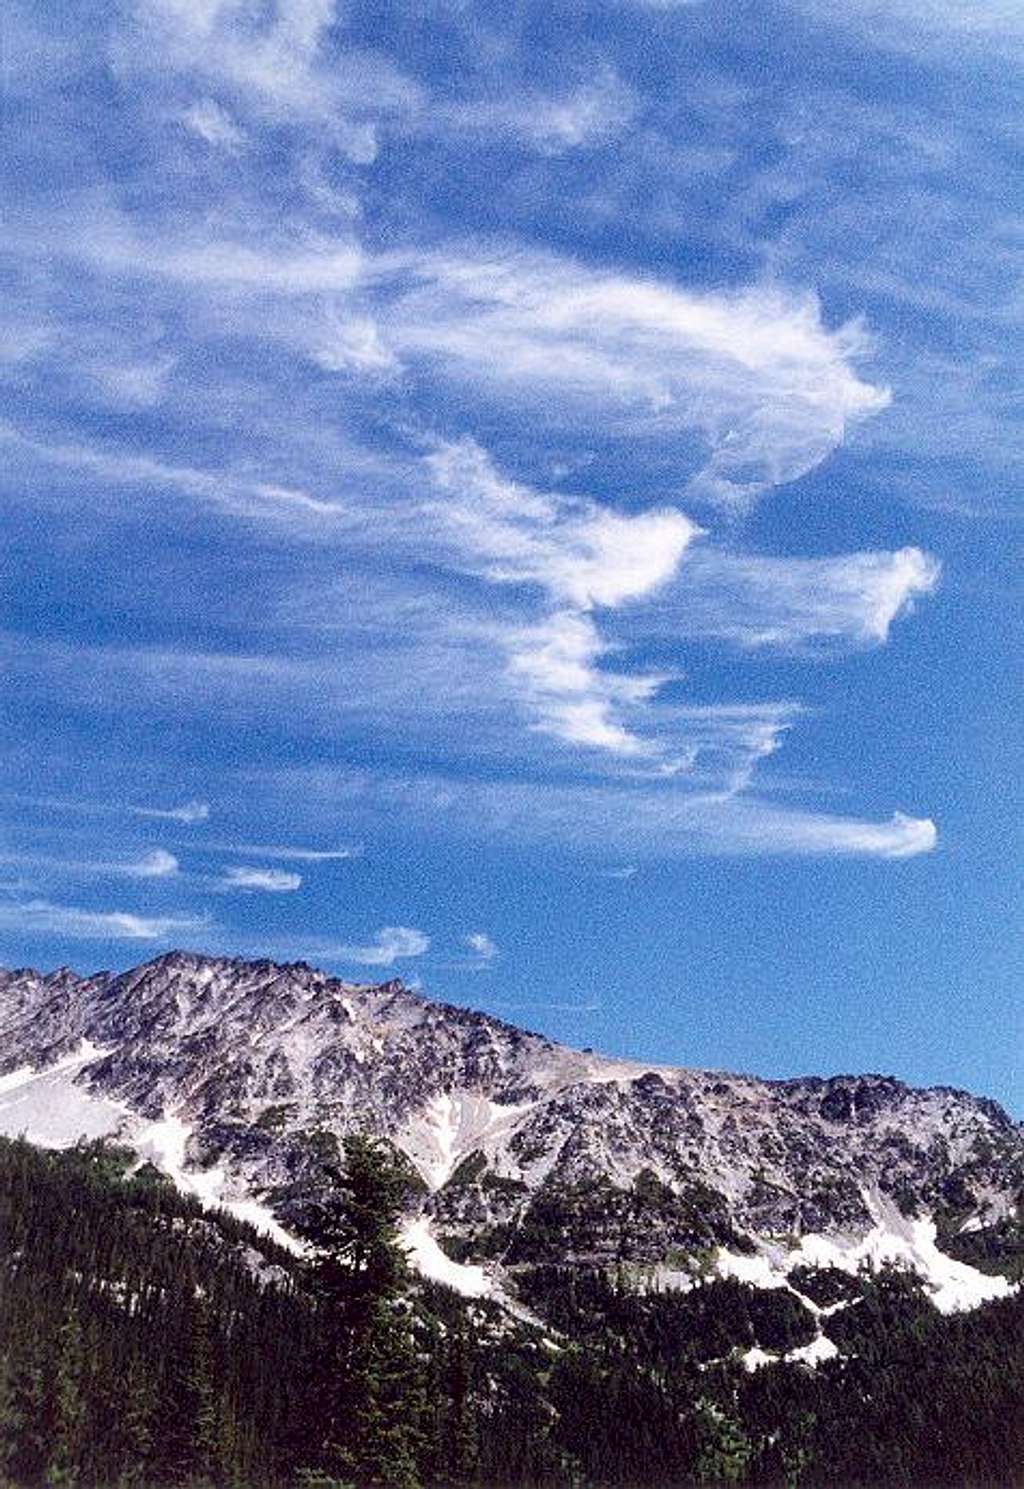 Weird clouds over Mt. Maude...